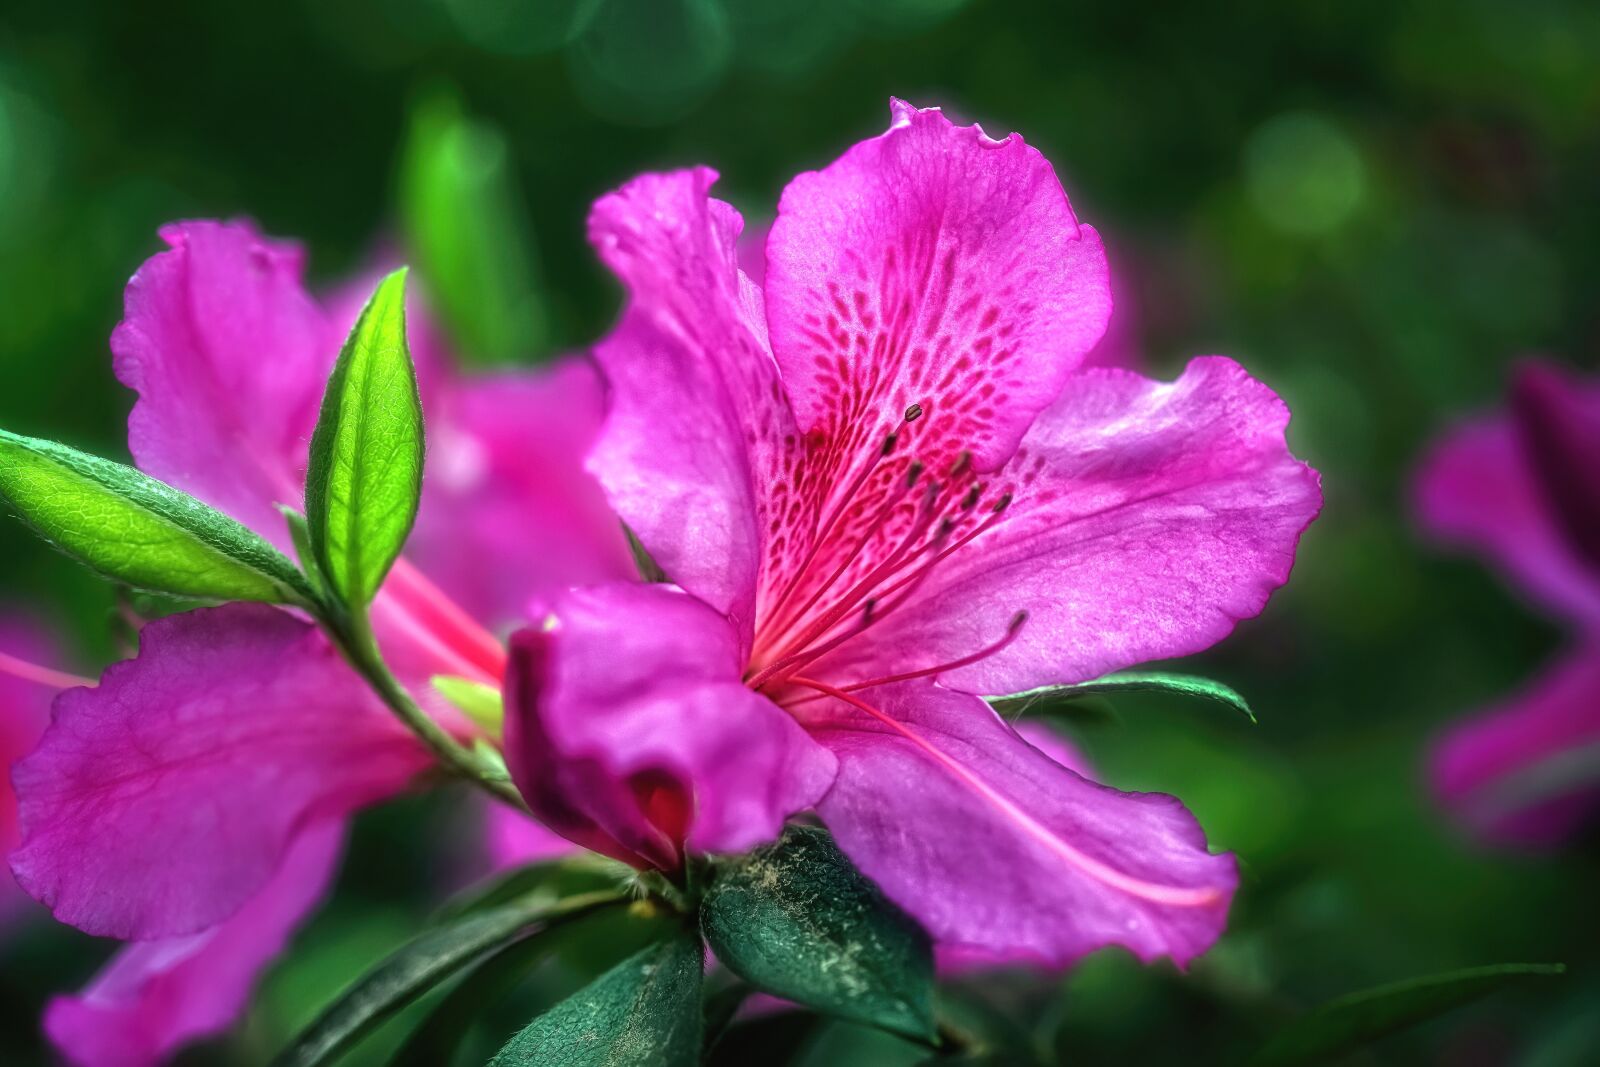 Sony a6300 sample photo. Azaleas, flowers, plant photography